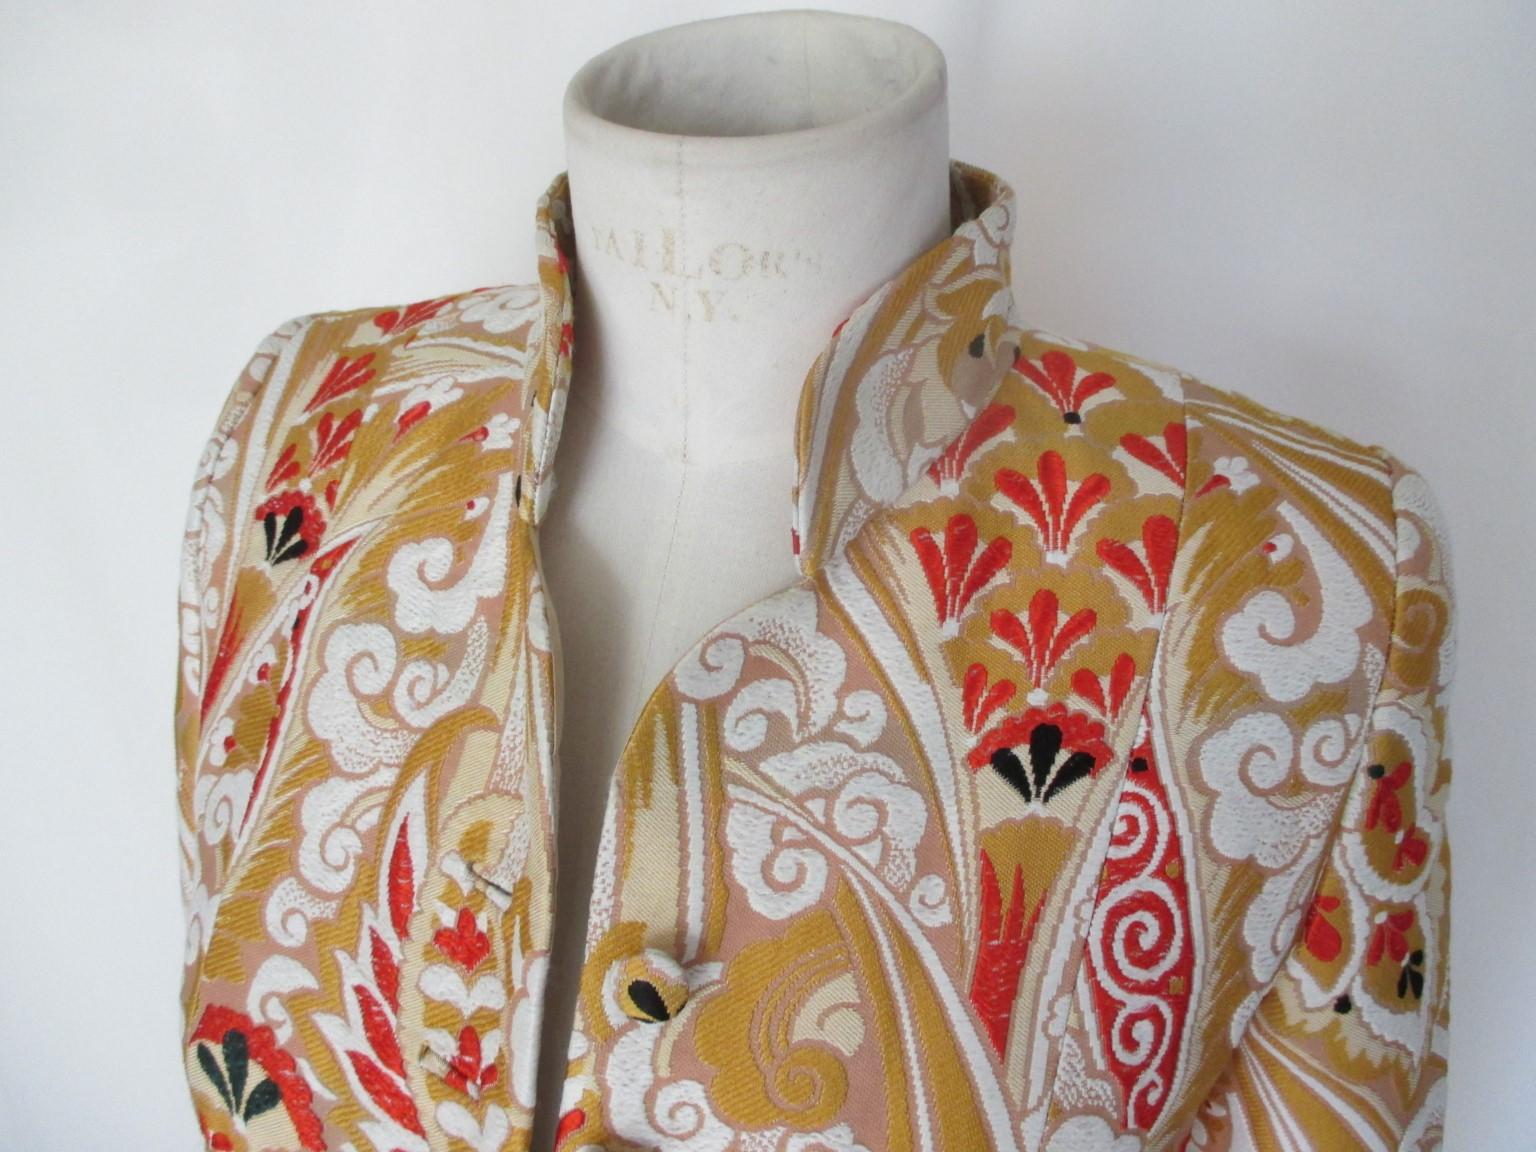 Il s'agit d'une rare veste vintage de style kimono de la collection haut de gamme Armani Prive.

Nous proposons des articles vintage plus exclusifs, voir notre boutique.

Détails :
Collectionneurs - article
Matière : soie mélangée
Kimono tissu de